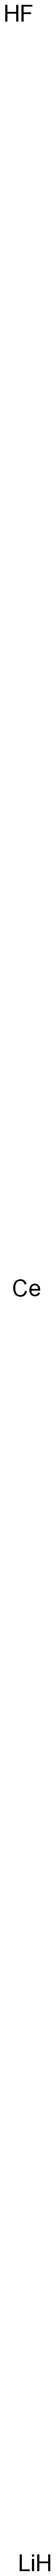 Cerium lithium fluoride Structure